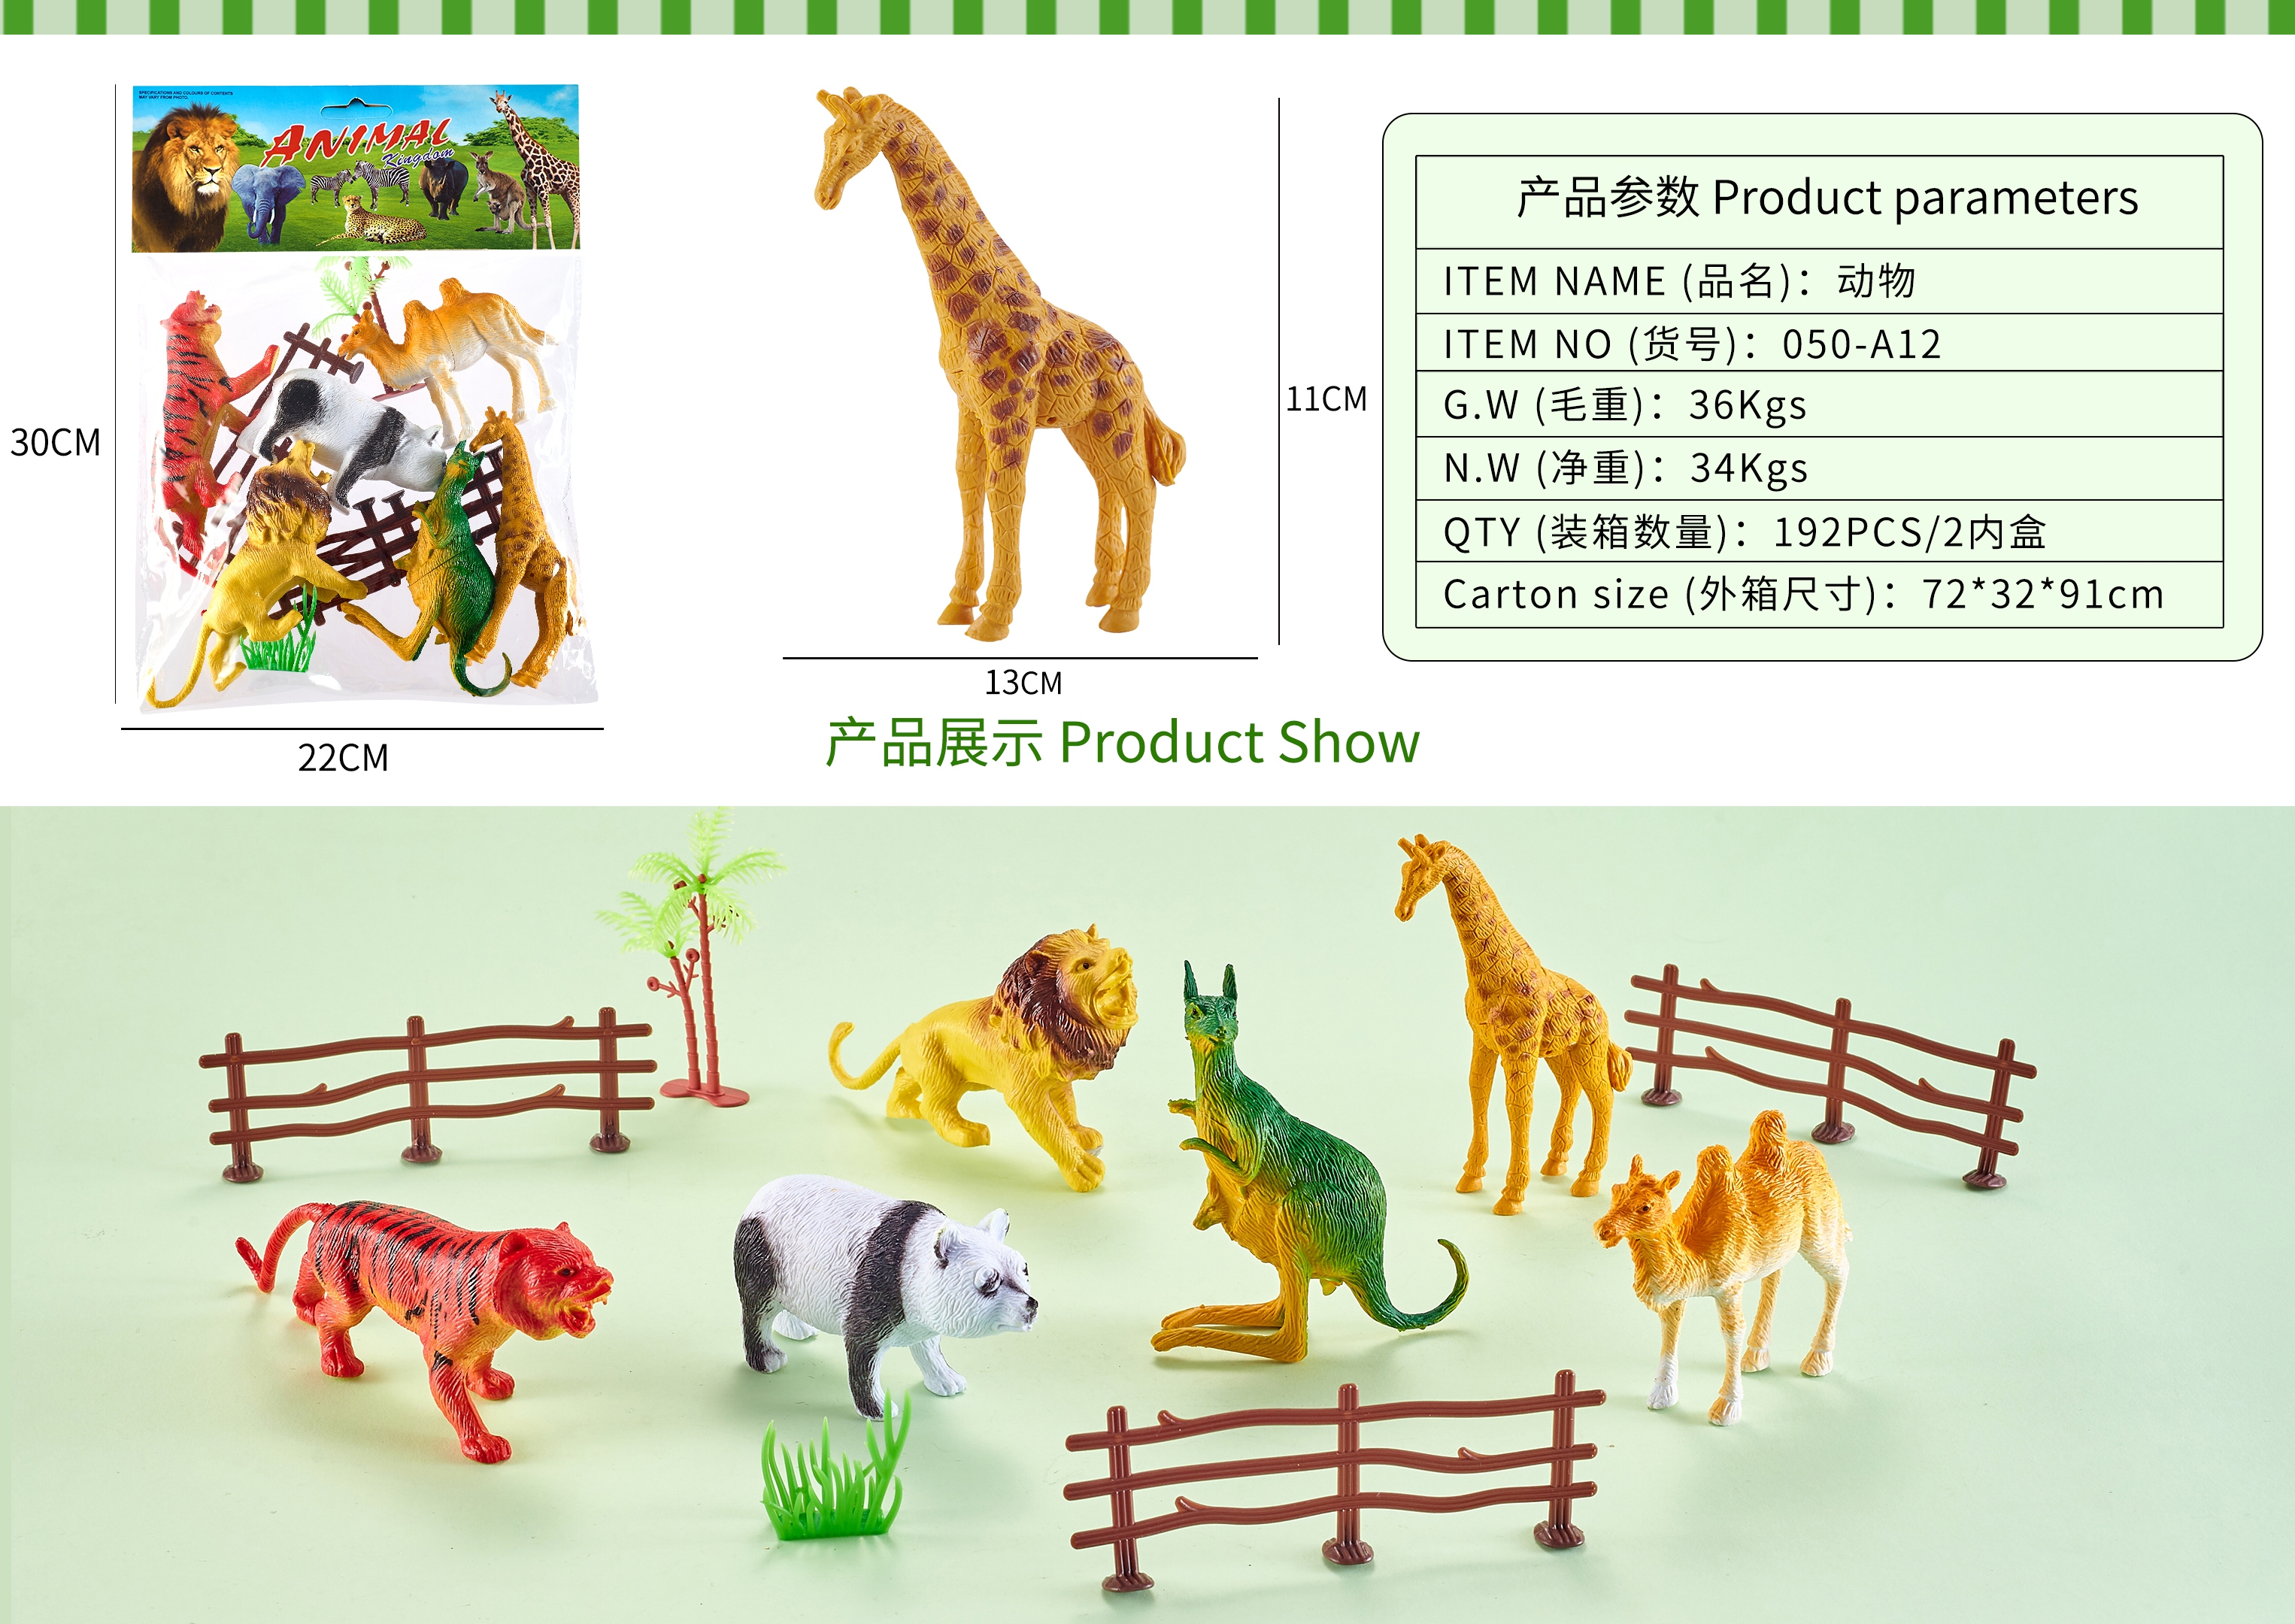 义乌黄荣仁玩具2776店面模型玩具野生动物恐龙玩具海洋动物系列HC689详情9